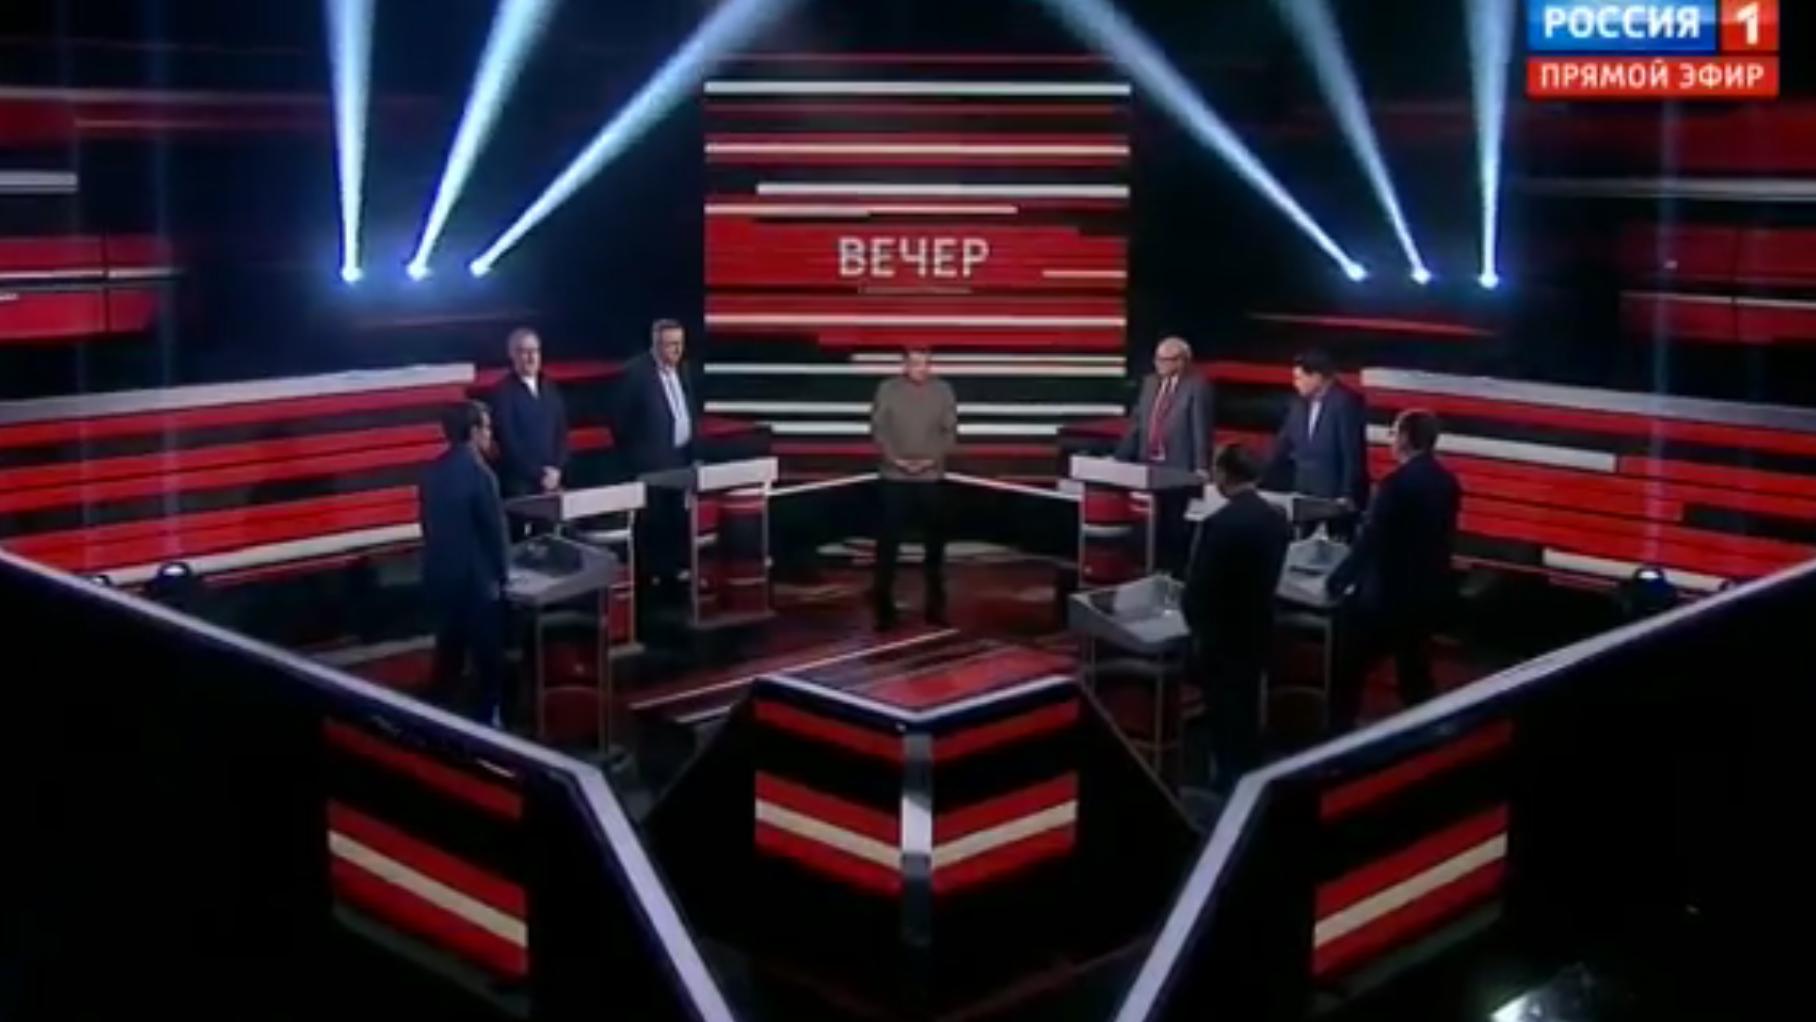 Mężczyźni stoją w studiu telewizyjnym, w środku - mężczyzna w szarej kurtce (Sołowiow)